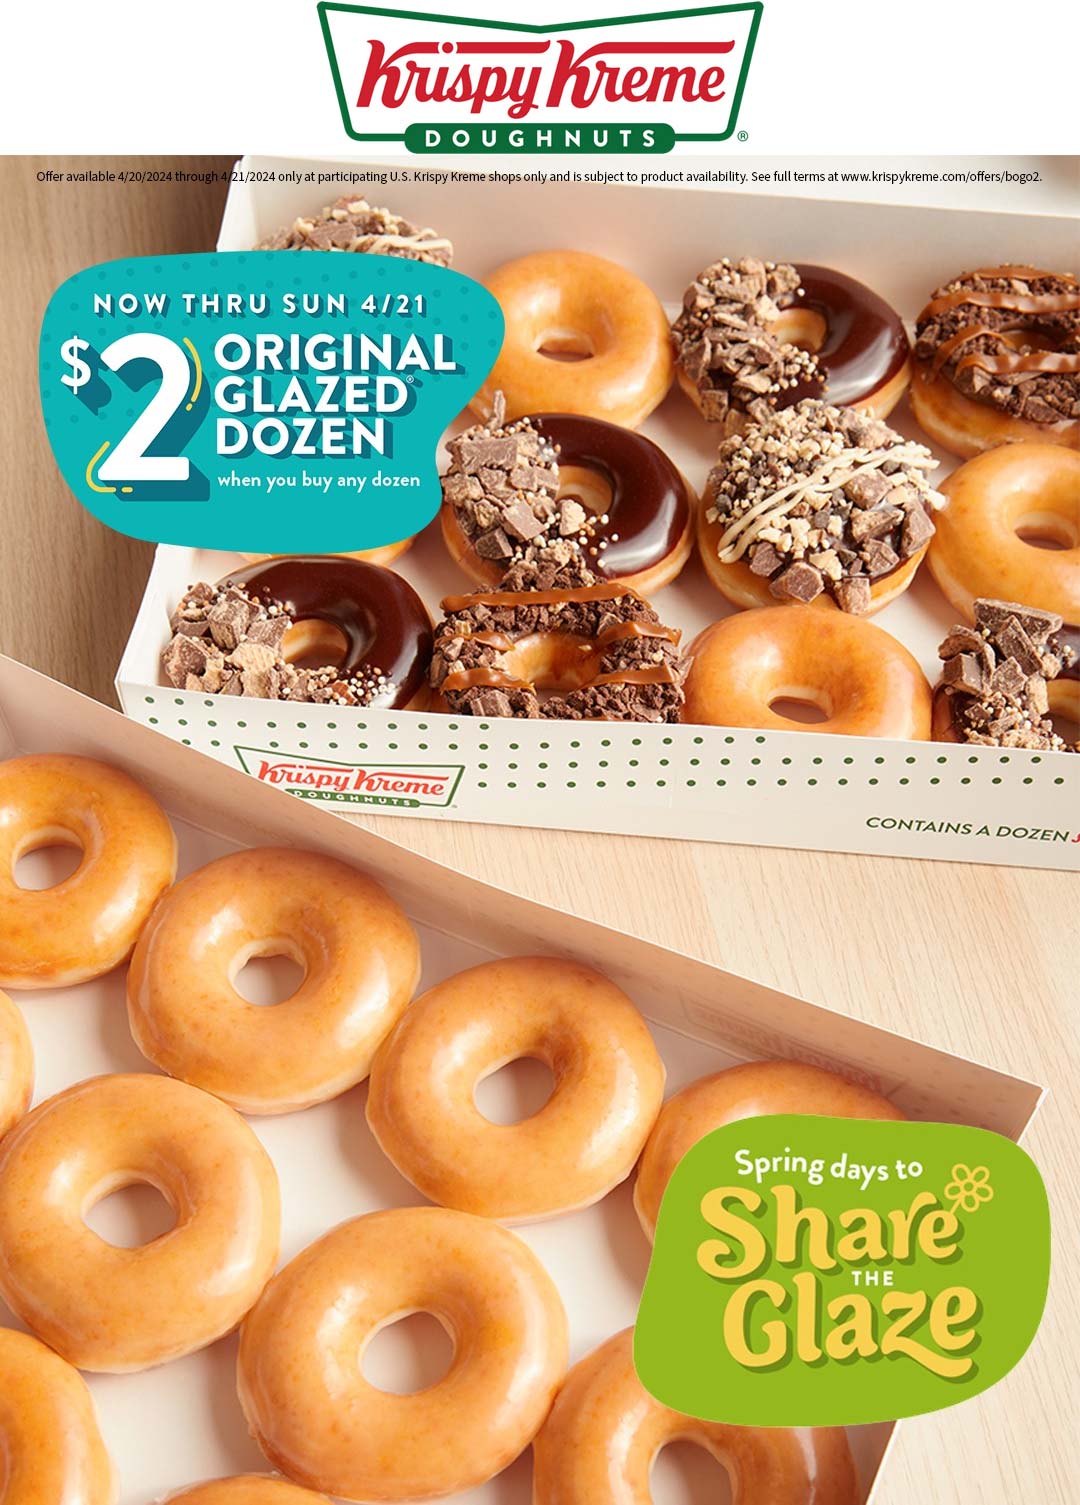 Krispy Kreme restaurants Coupon  Second dozen doughnuts for $2 at Krispy Kreme #krispykreme 